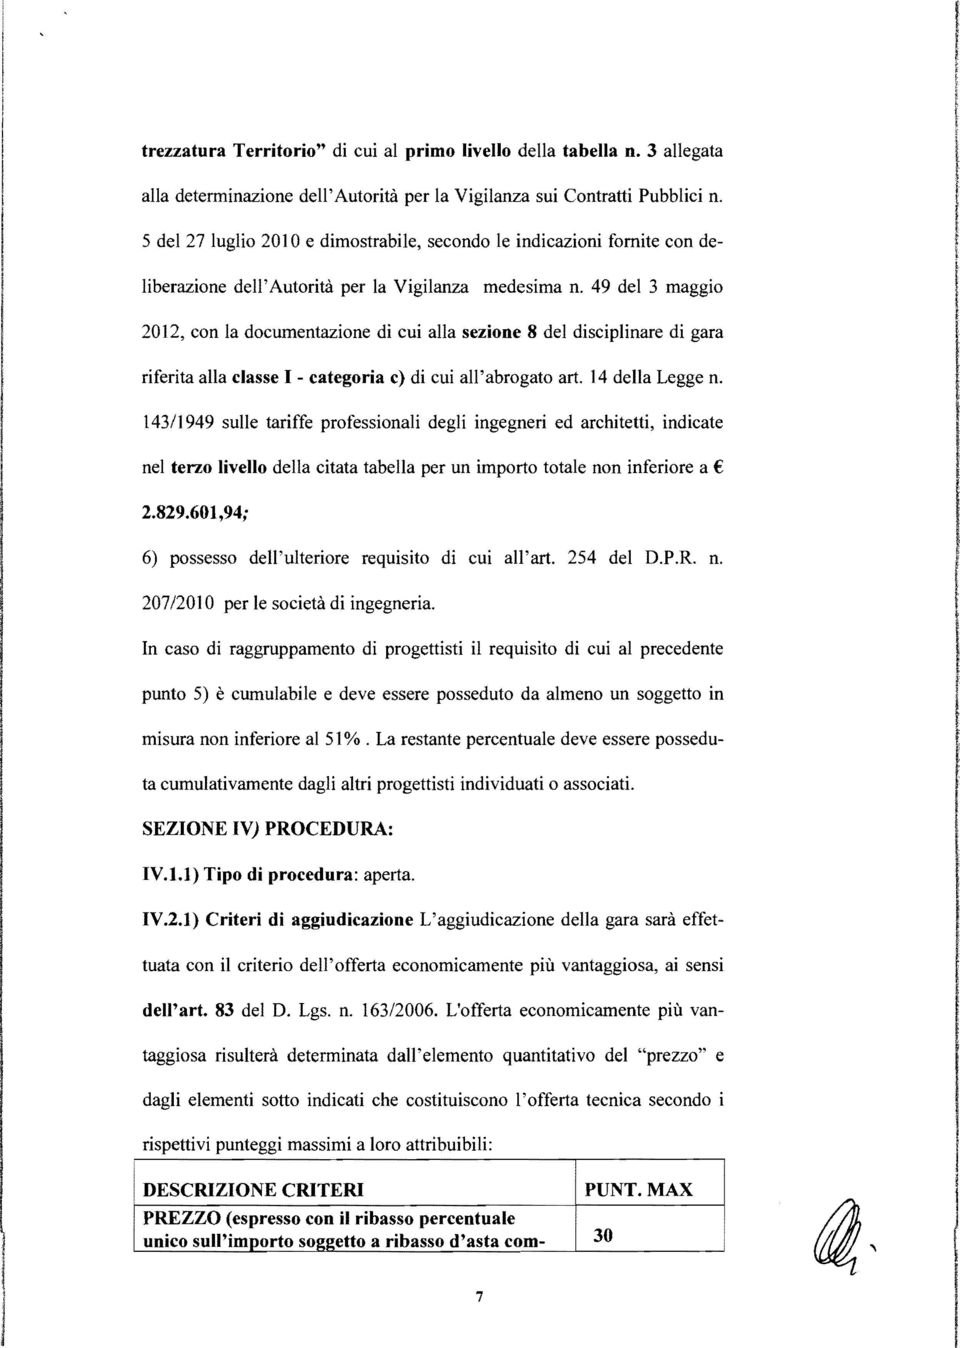 49 de 3 maggio 2012, con a documentazione di cui aa sezione 8 de discipinare di gara riferita aa casse - categoria c) di cui a'abrogato art. 14 dea Legge n.